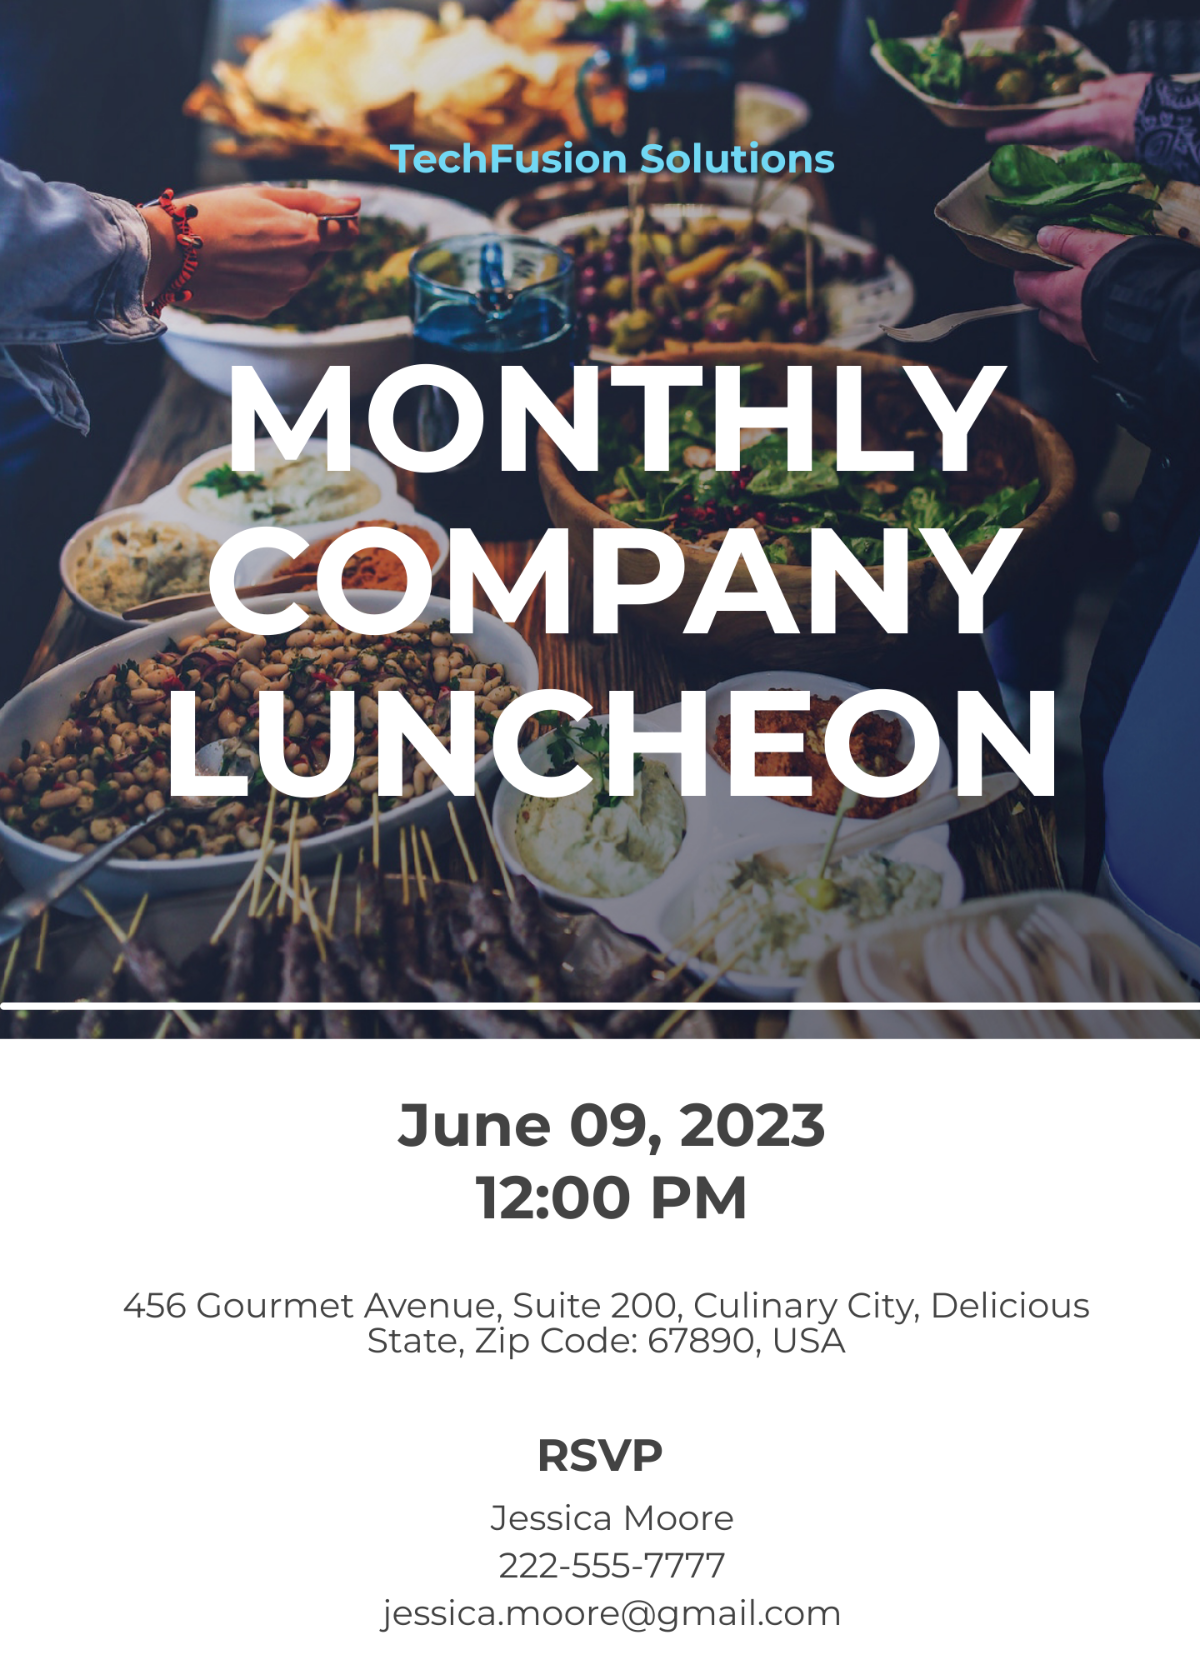 Company Luncheon Invitation